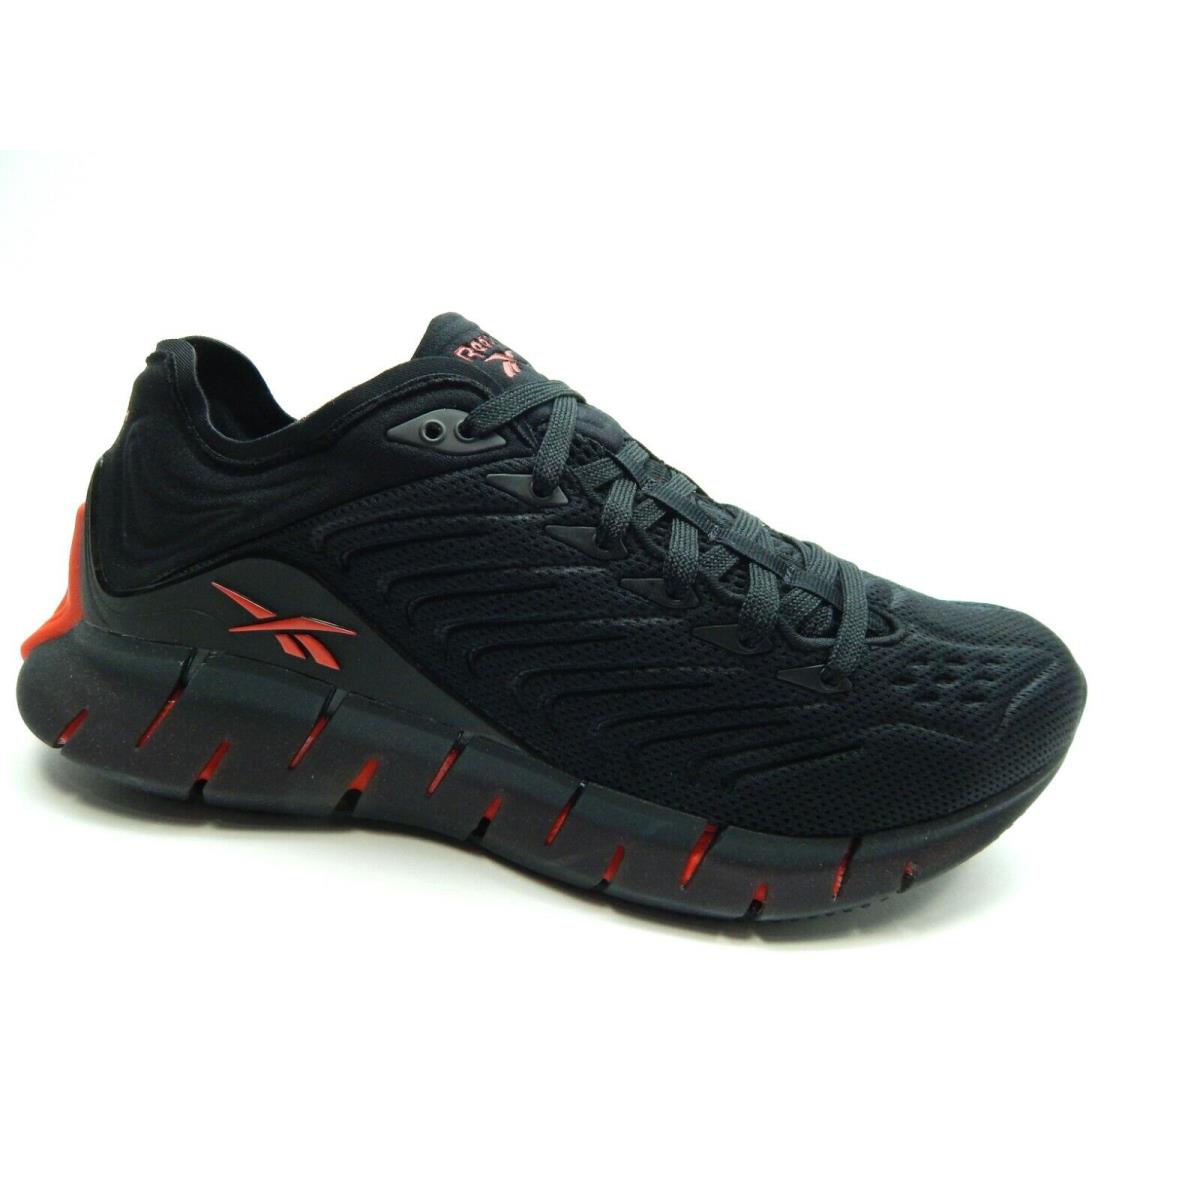 Reebok Zig Kinetica Insred Black Black Running FW5289 Men Shoes Size 9.5